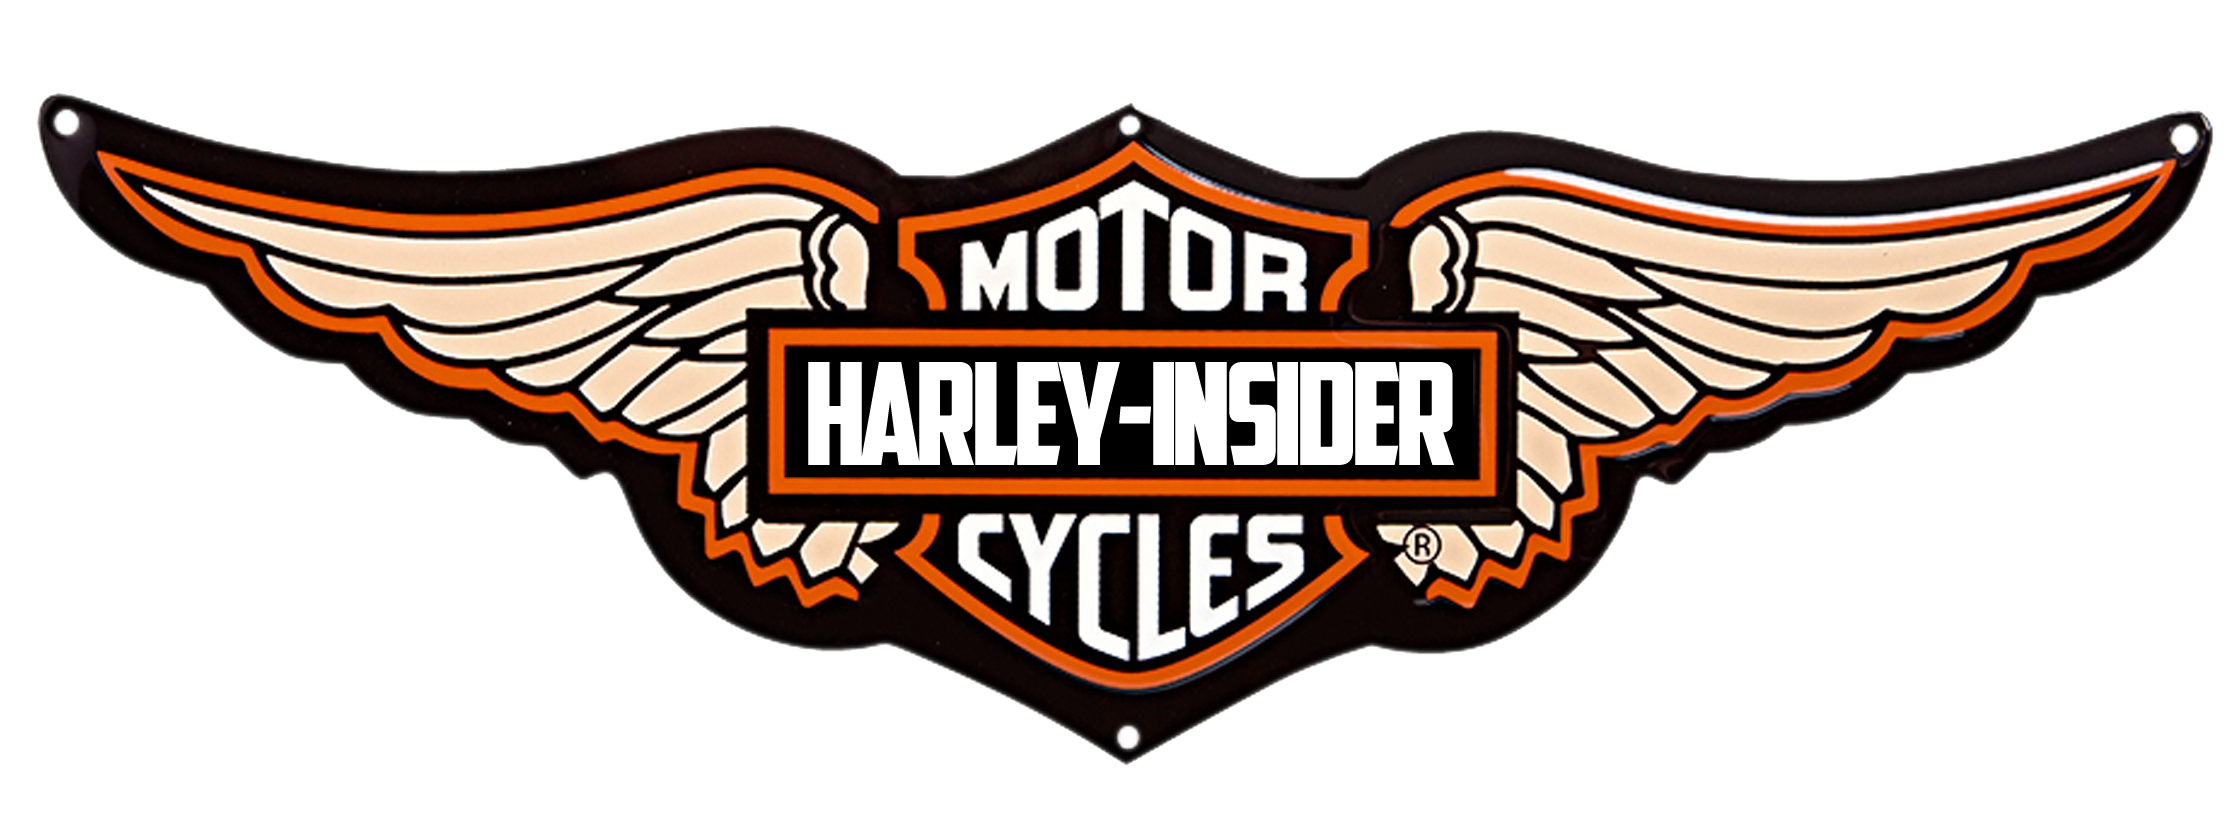 Harley Davidson Motorcycles Logo Free Desktop 8 HD Wallpapers 